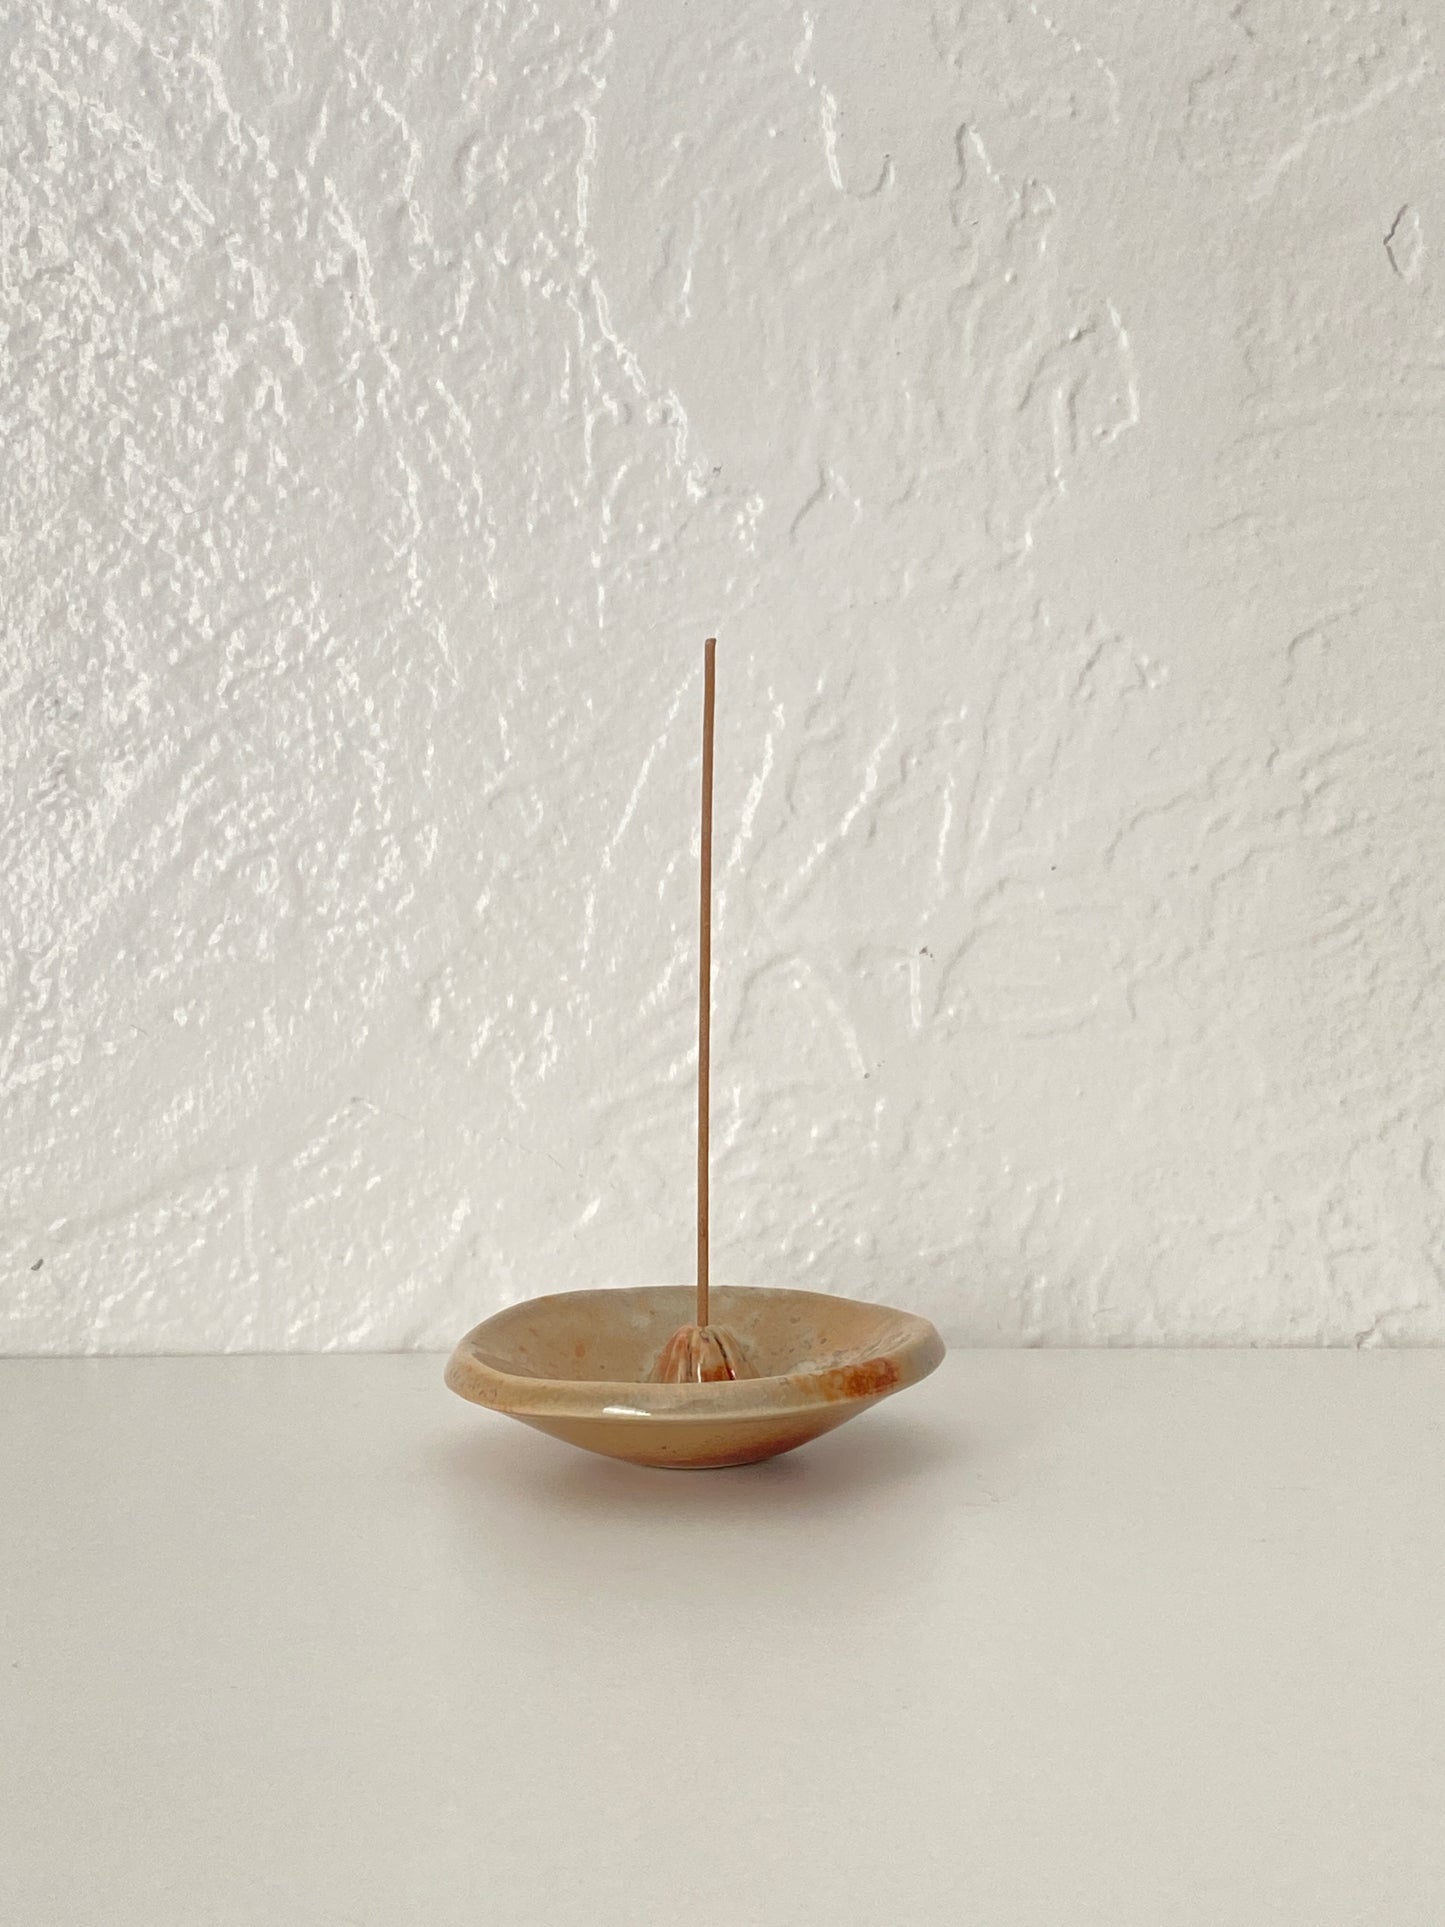 raku fired incense burner - bright copper